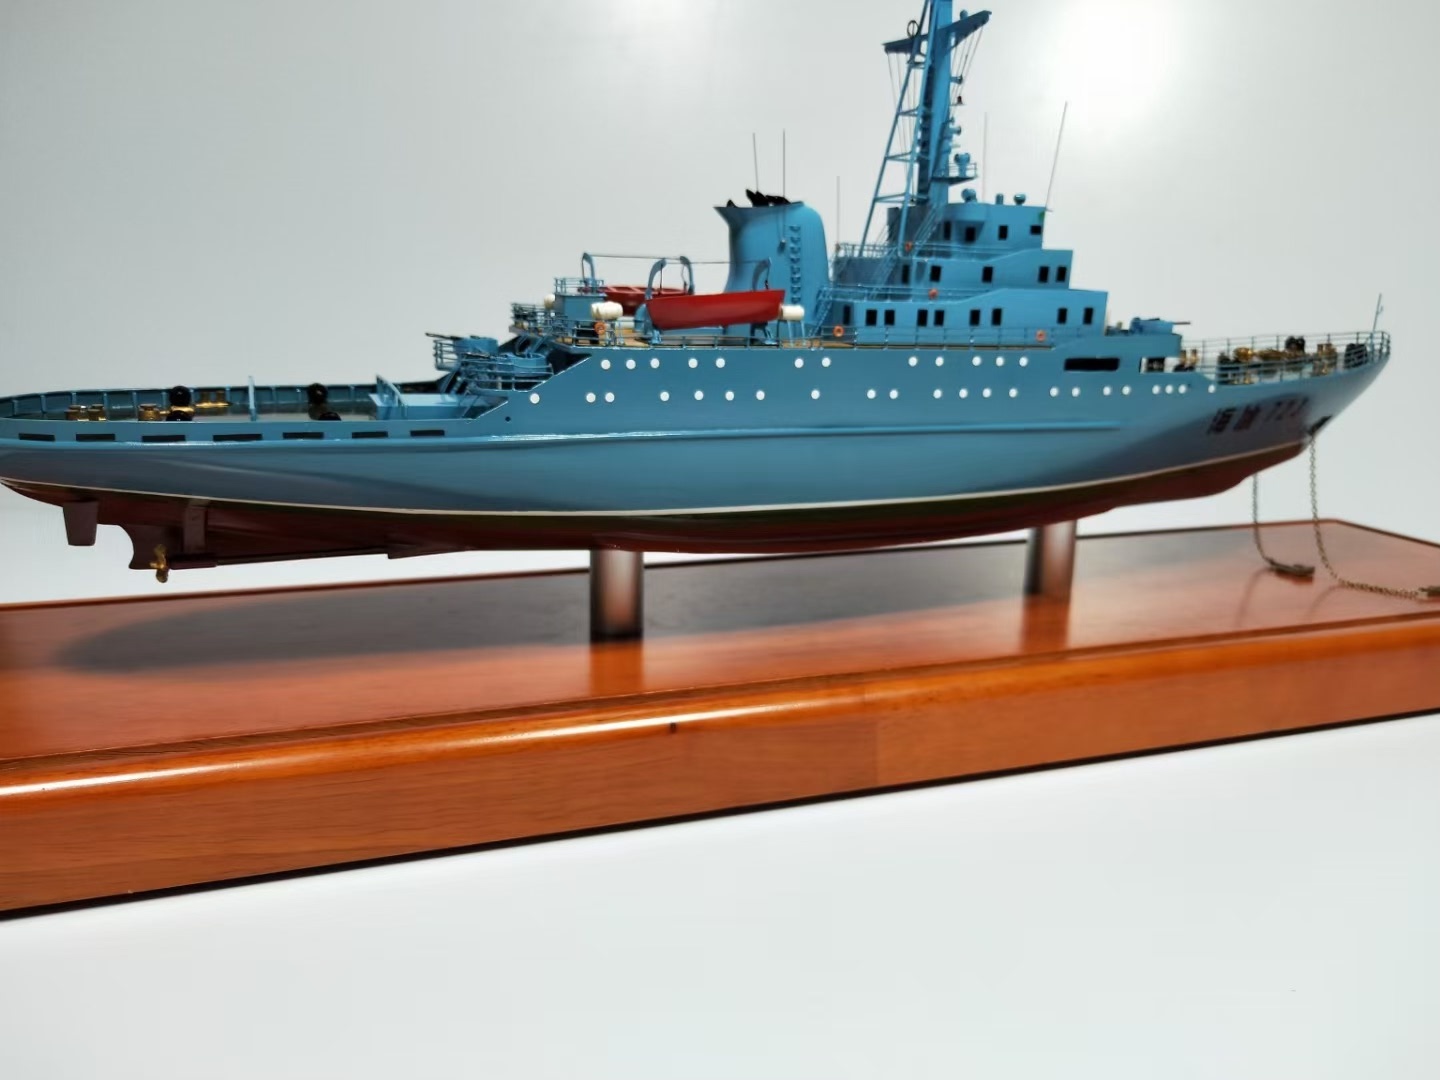 海冰723破冰船仿真模型合金航模成品收藏军模静态展示尺寸可定制